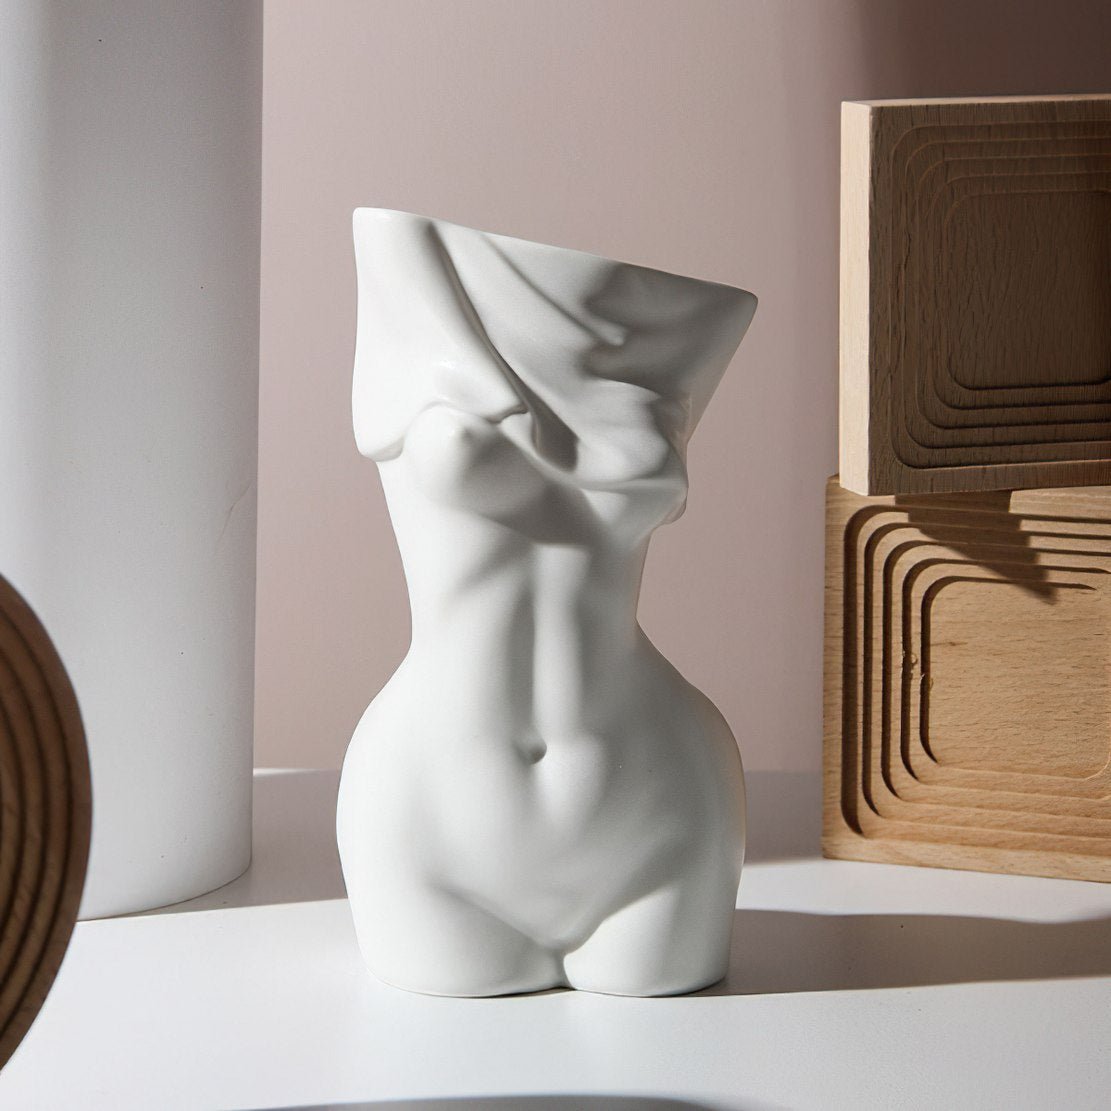 White, ceramic, female body sculpture vase